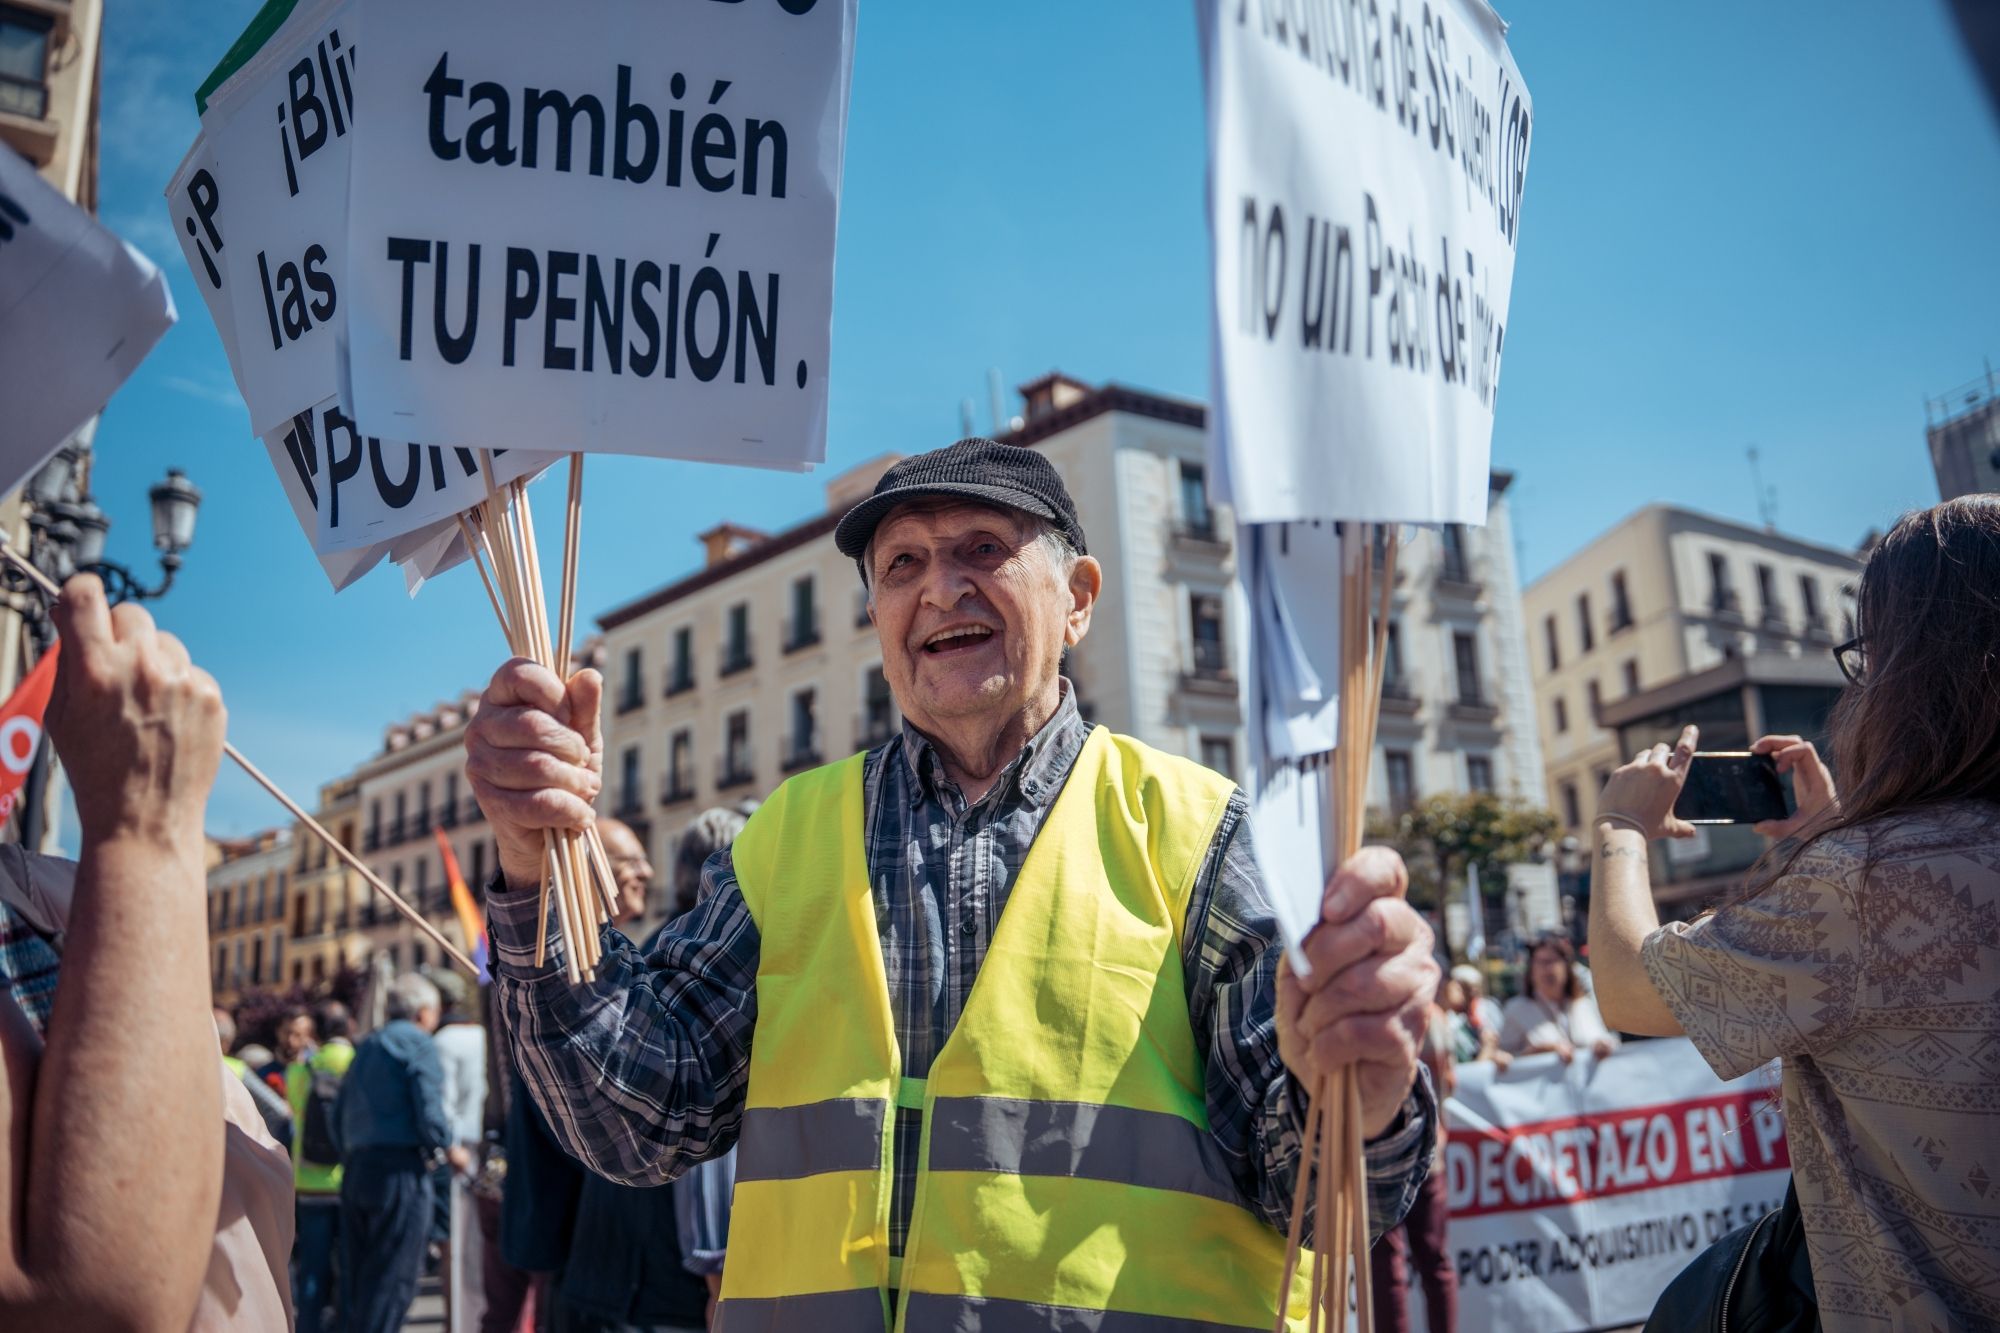 La pensión de jubilación sube a 1.373 euros en abril: es casi un 10% más alta que el año pasado